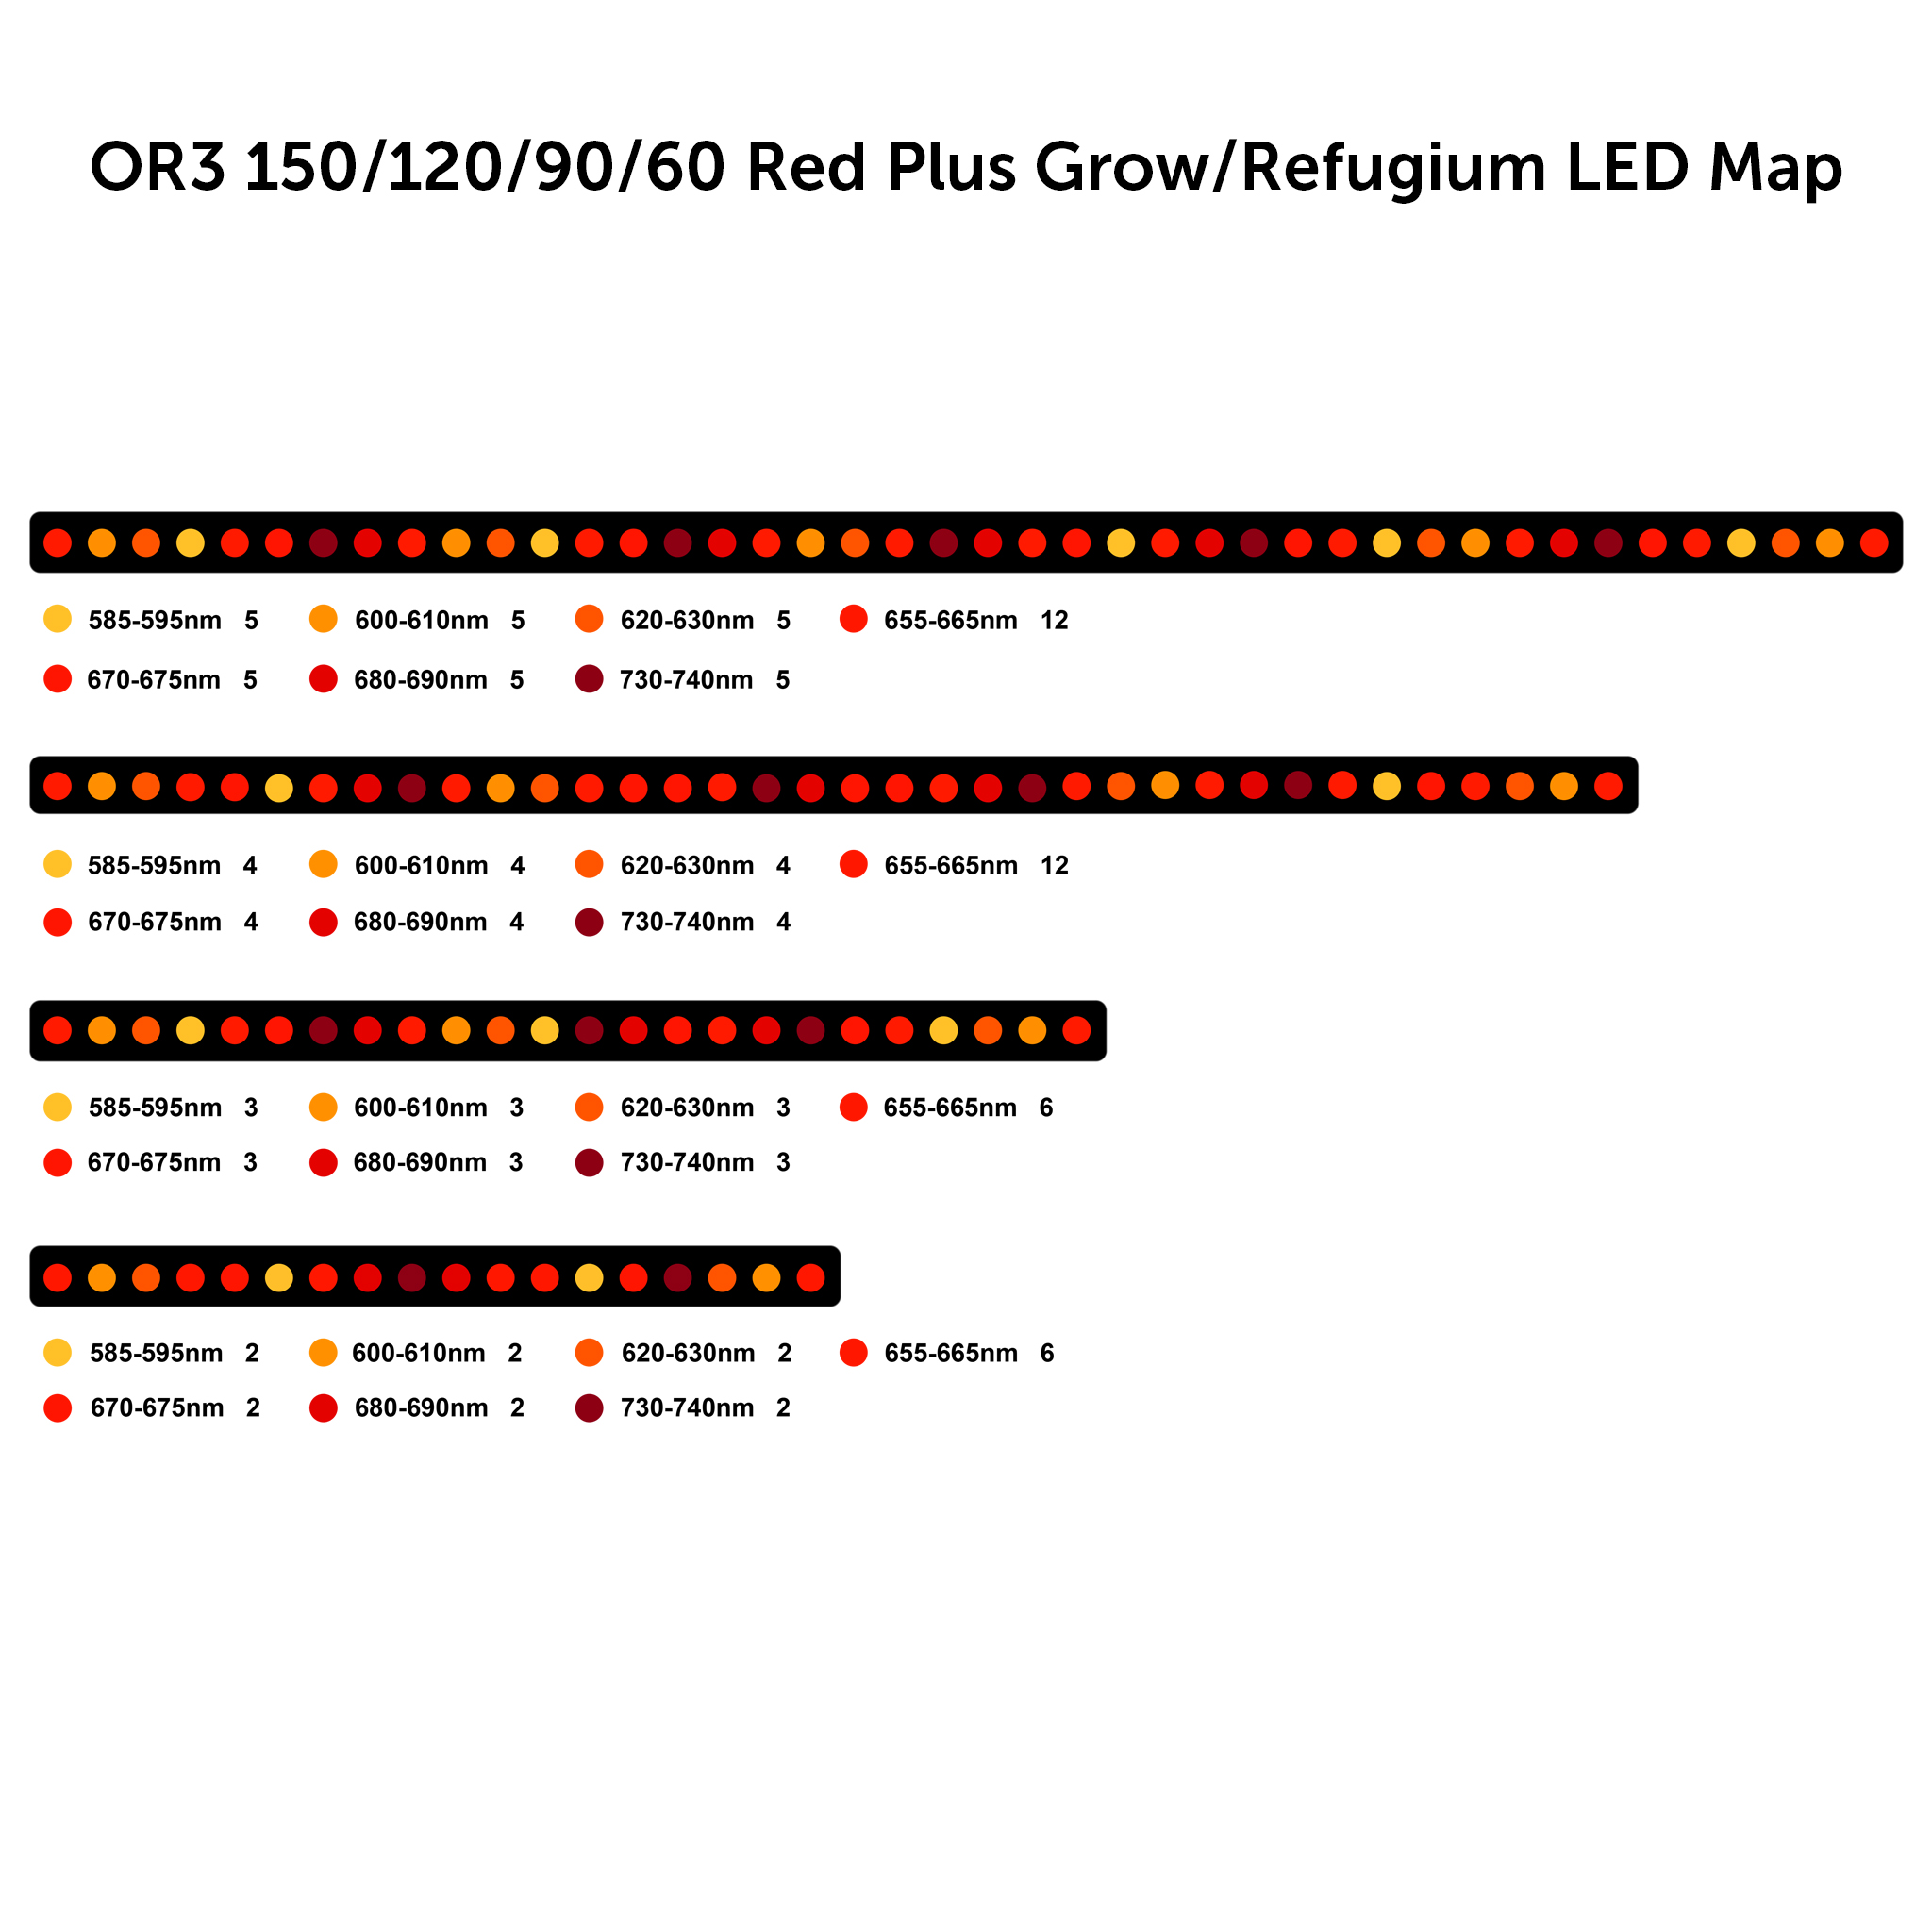 nebo3-red-plus-grow-refugium-led-map